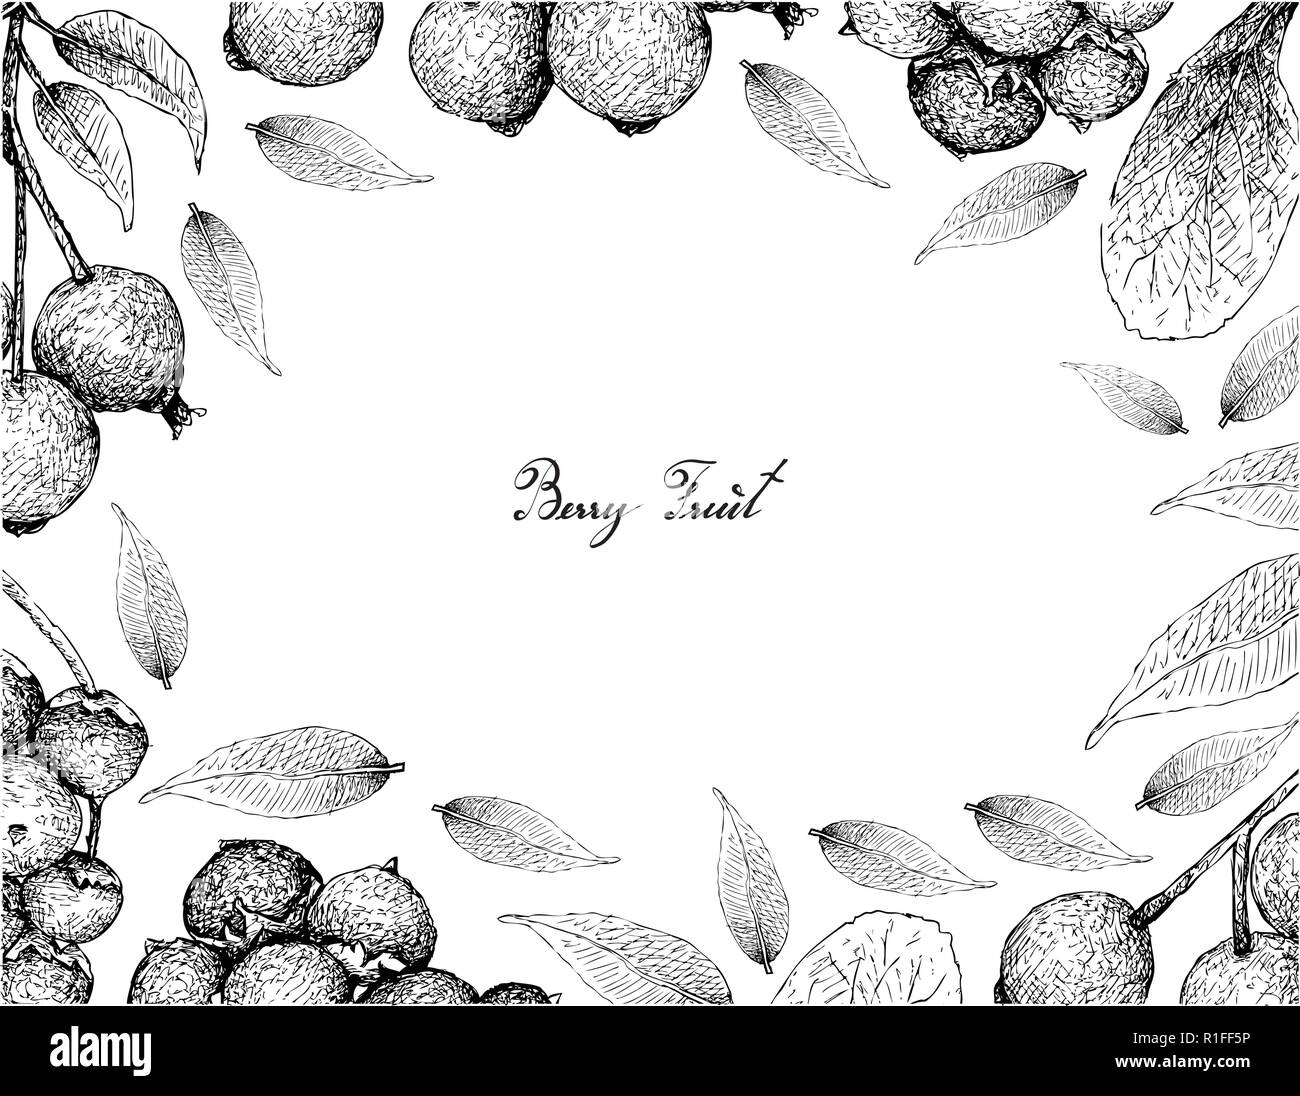 Beerenfrucht, Illustration von Hand gezeichnete Skizze von Jostaberries und Magenta Lilly Pilly, Magenta Kirsche oder Syzygium Paniculatum Früchte isoliert o Stock Vektor